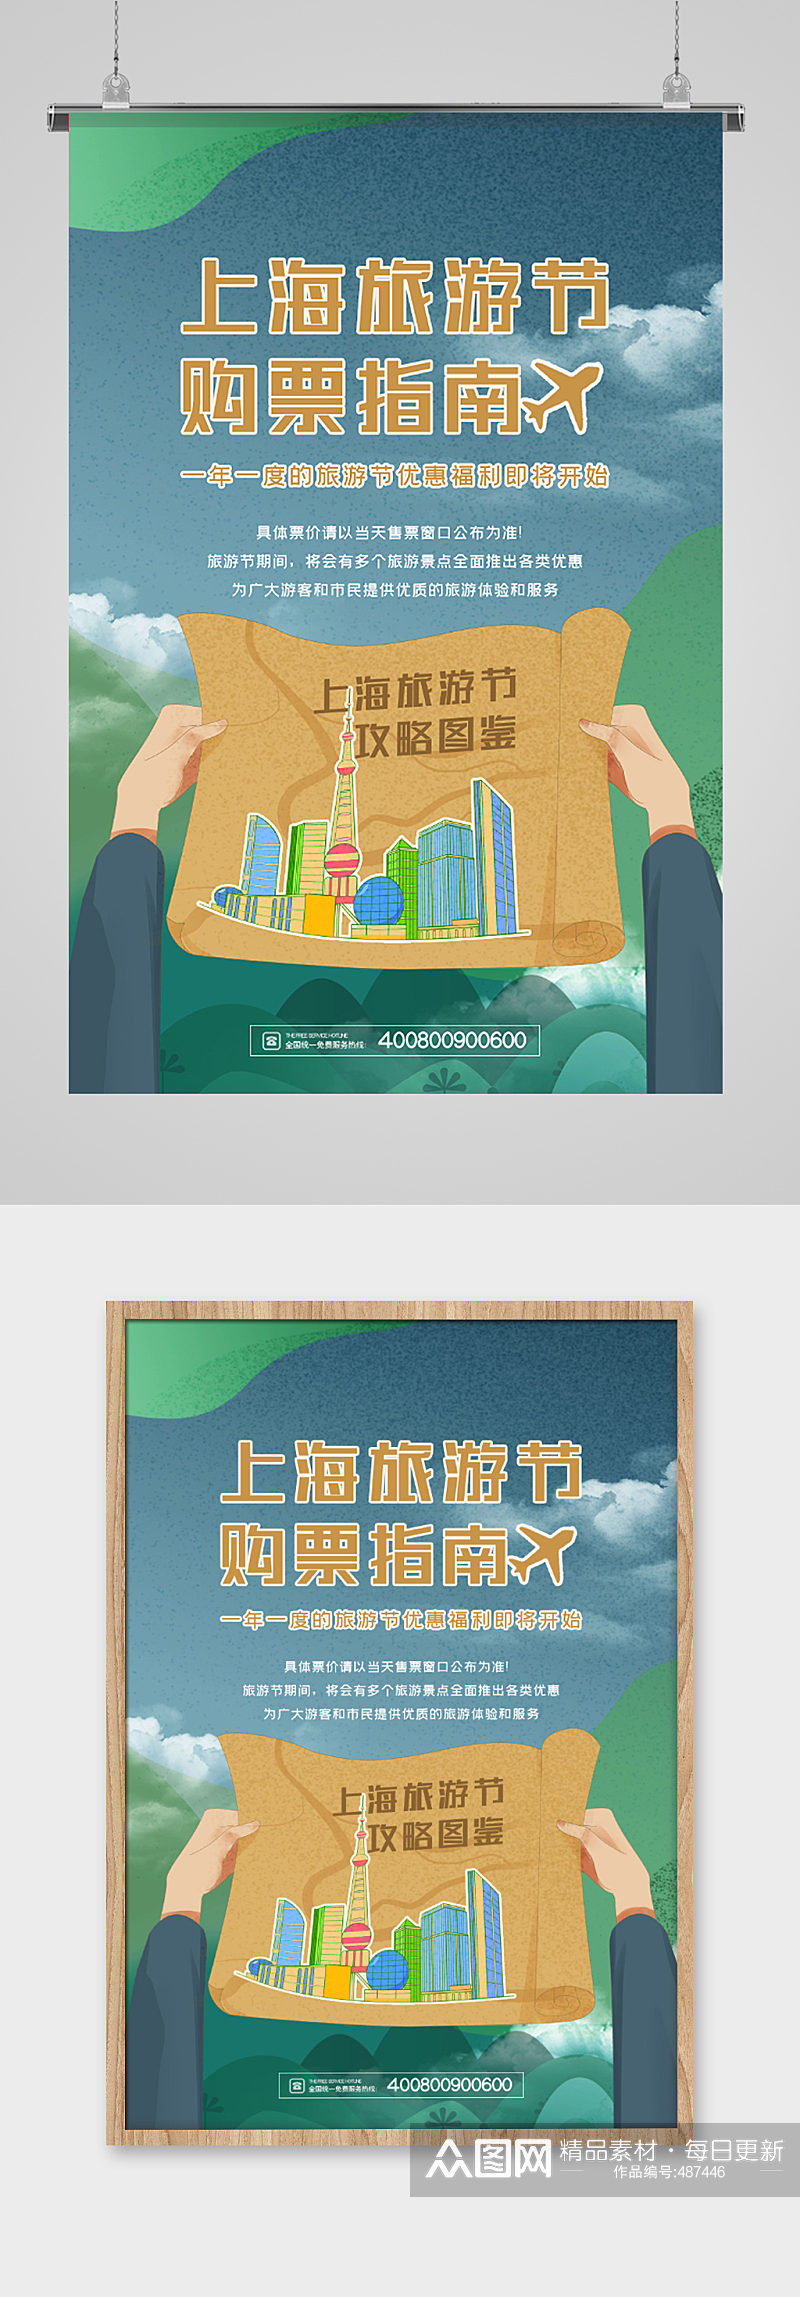 上海旅游节购物指南海报素材